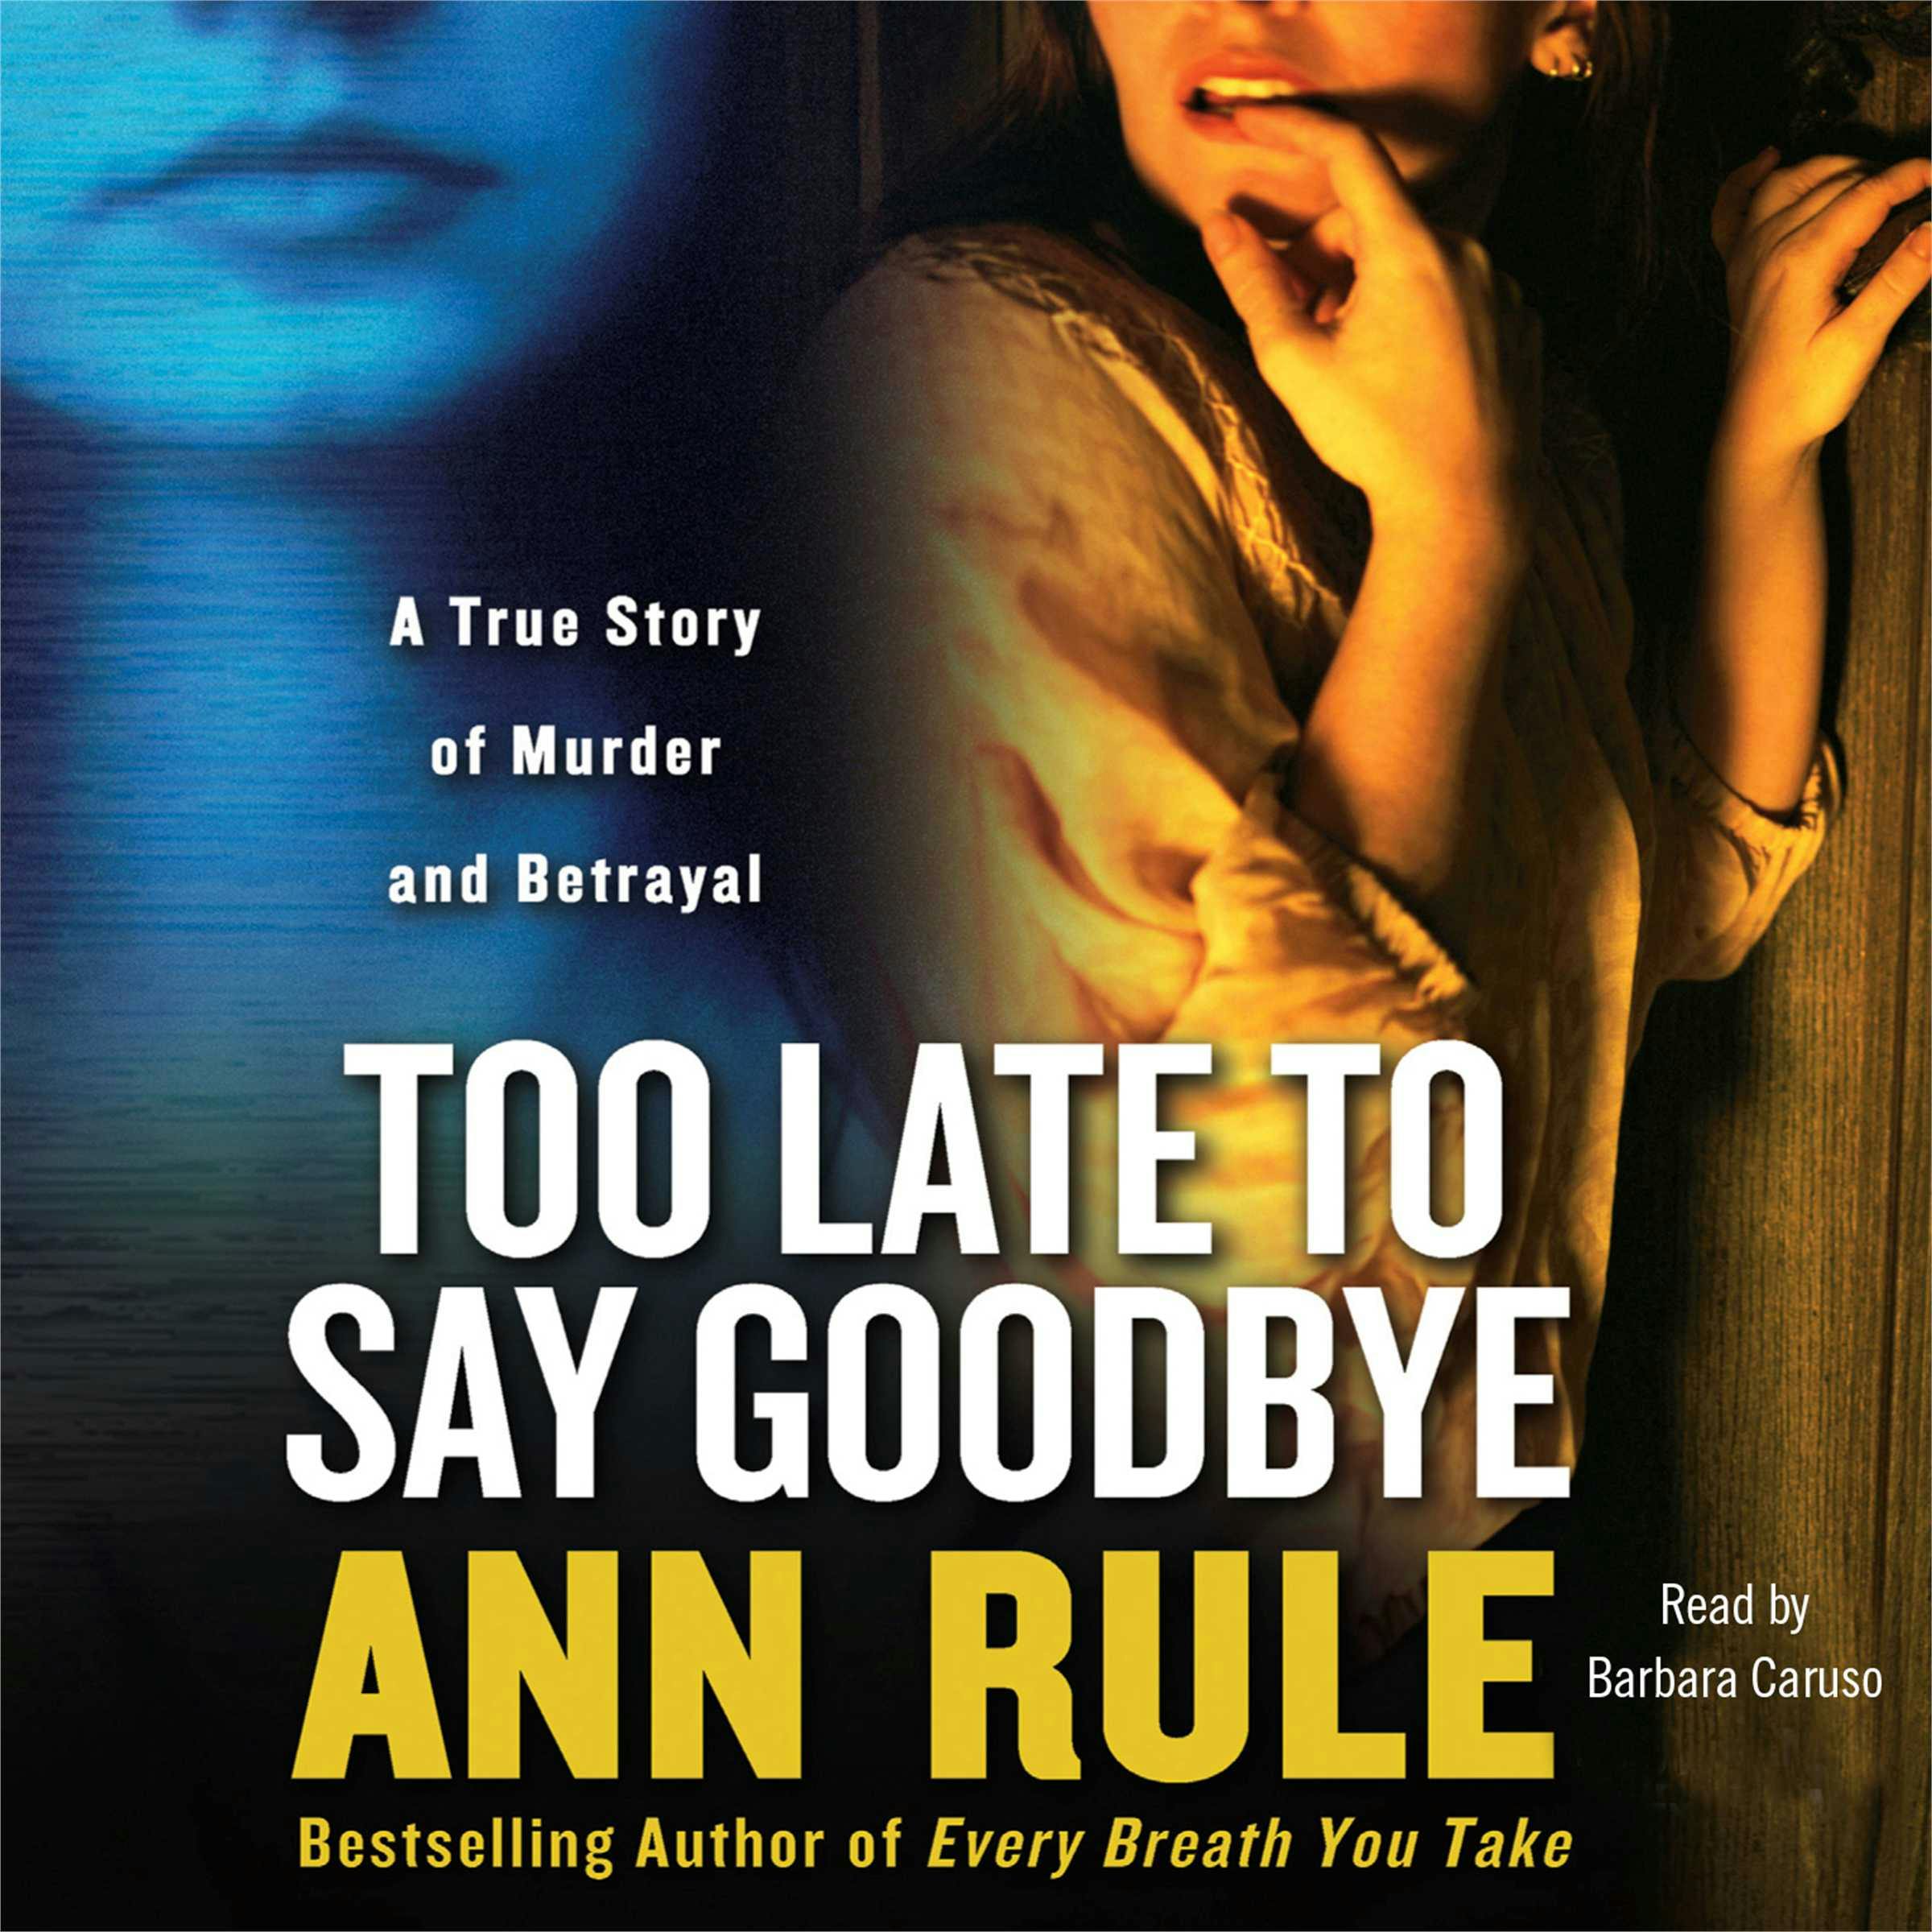 Too Late to Say Goodbye - Ann Rule